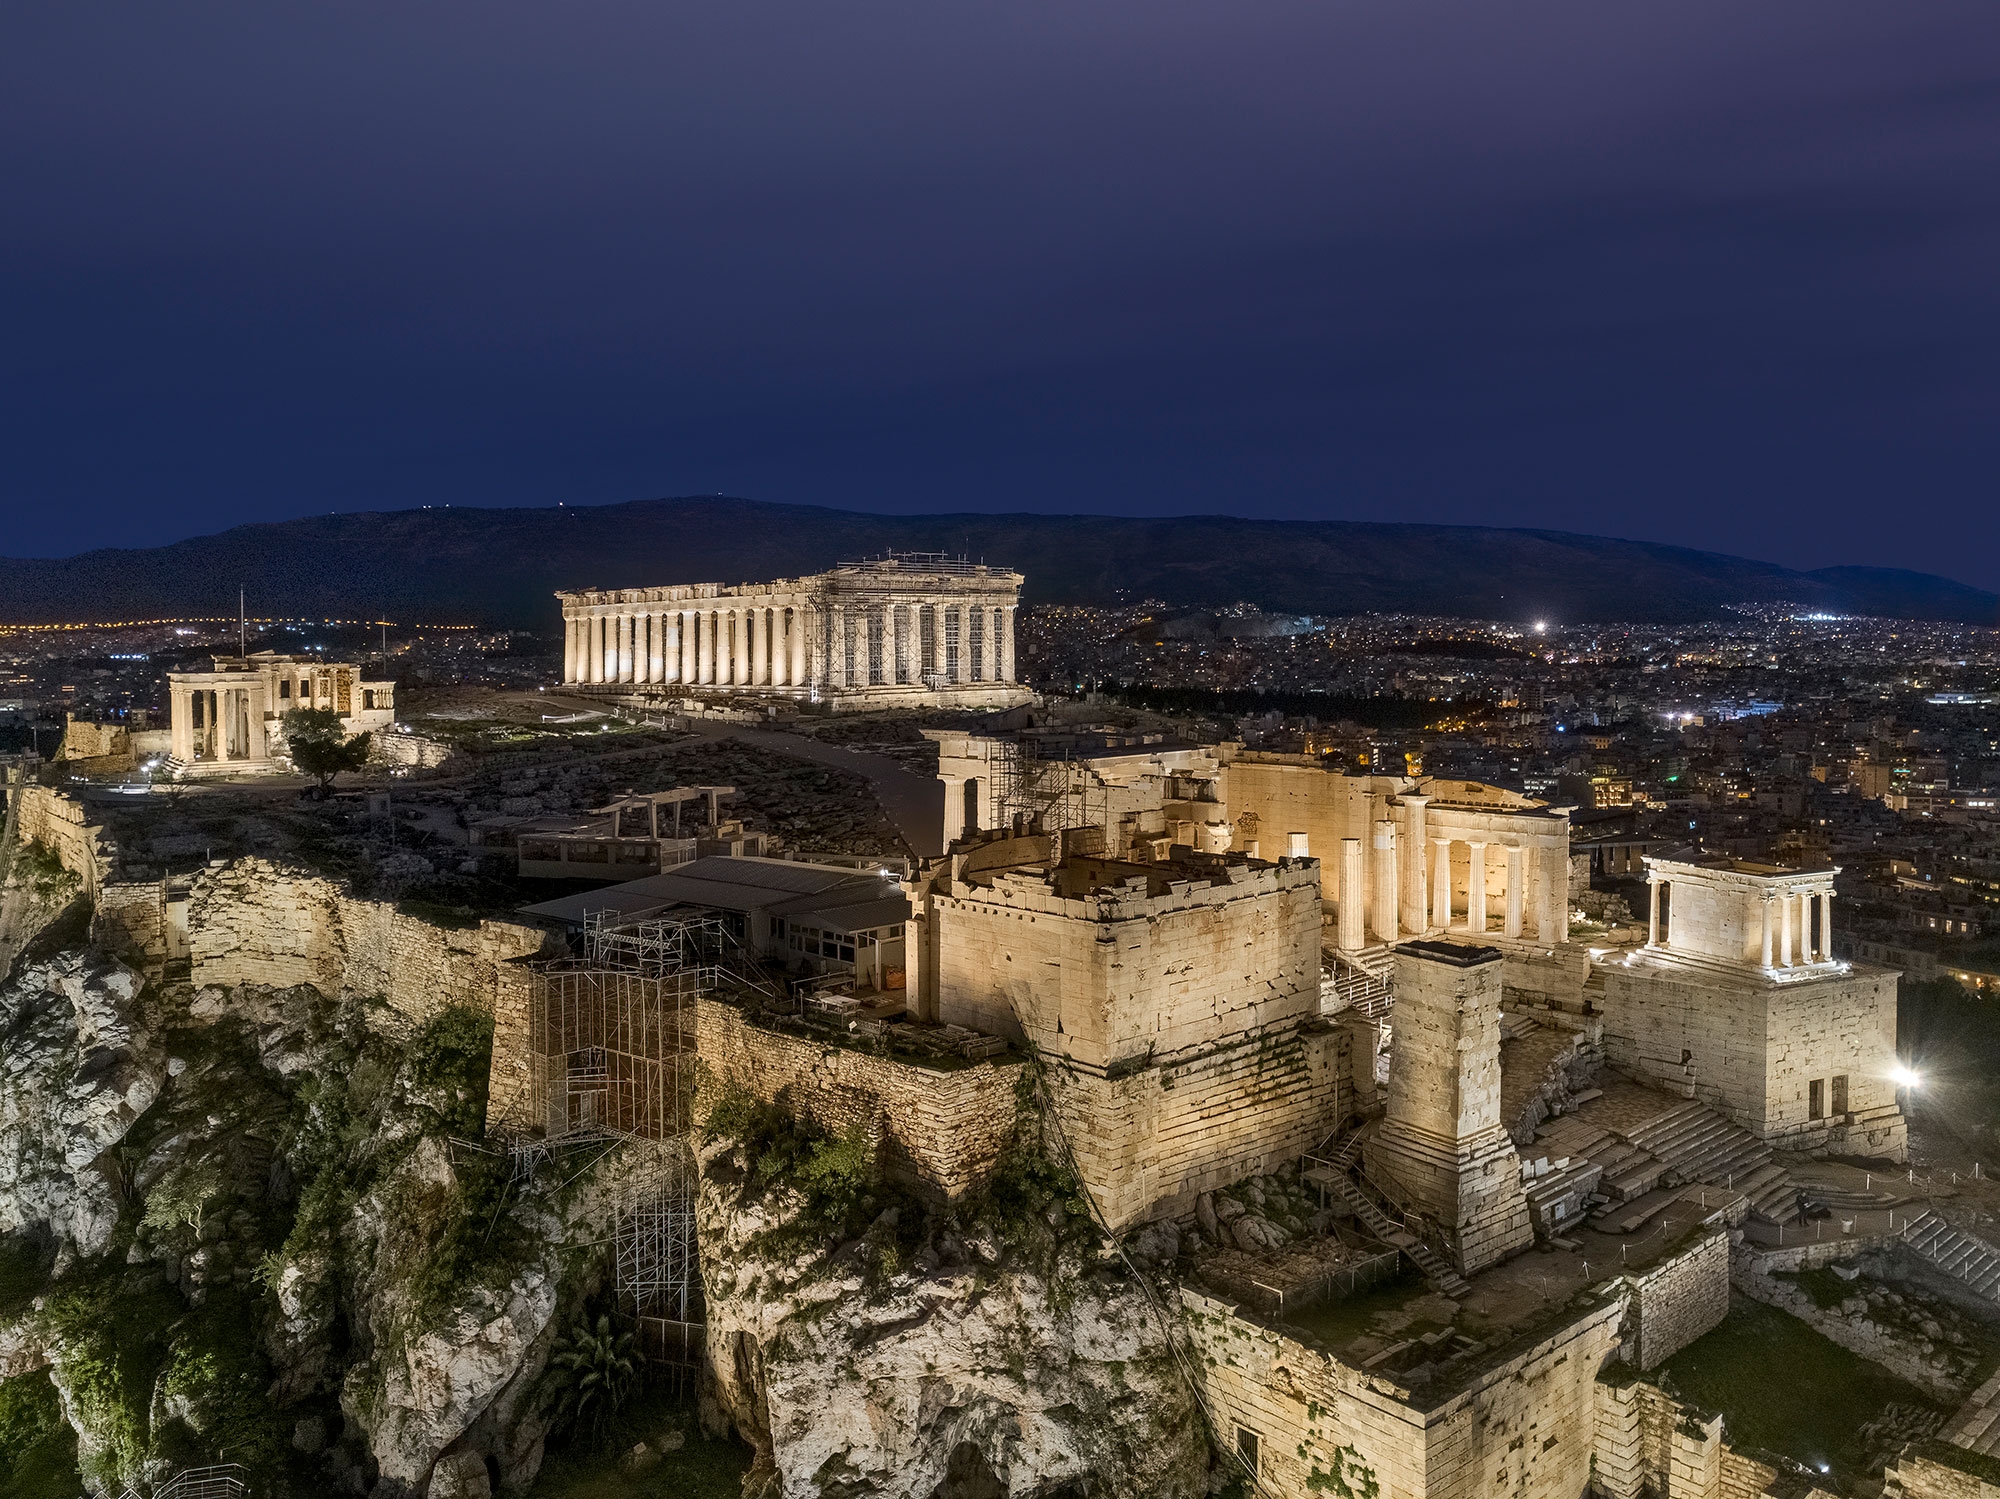 Acropolis of Athens
Photo credit: Gavriil Papadiotis, Stelios Tzetzias